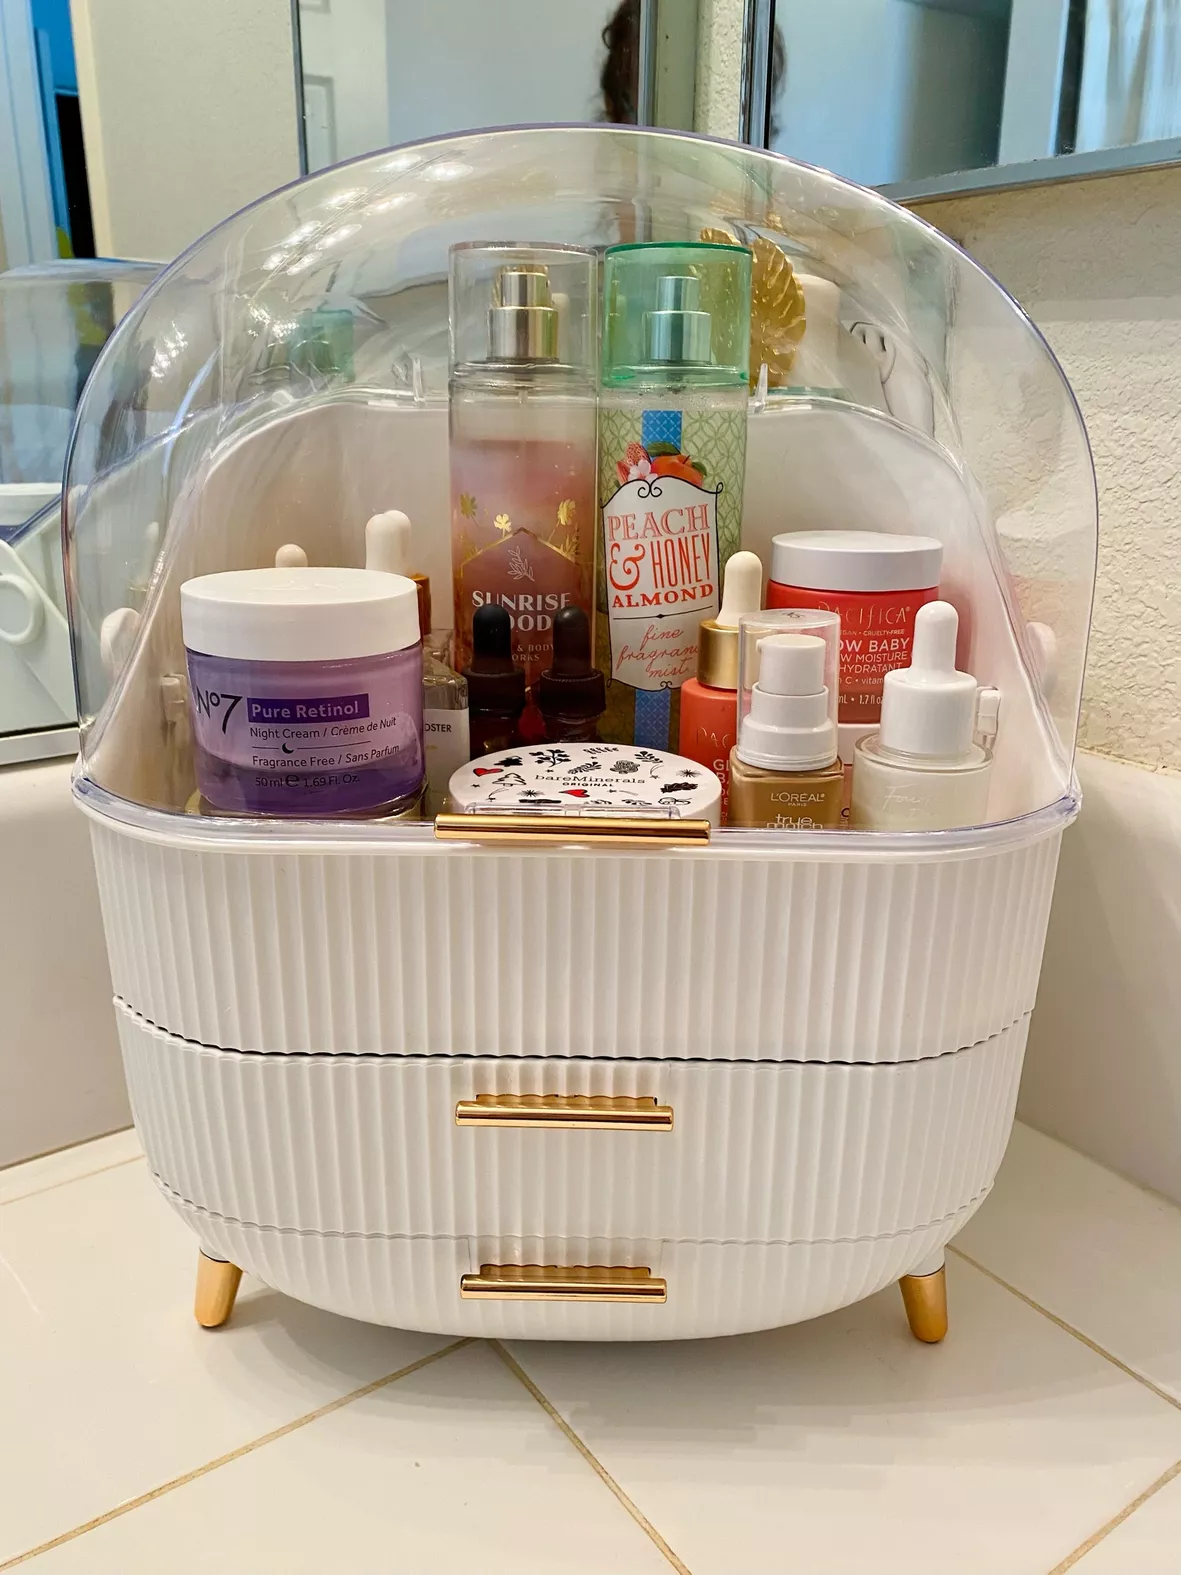 SUNFICON Makeup Tray Organizer Bathroom Cabinet Cosmetic Storage